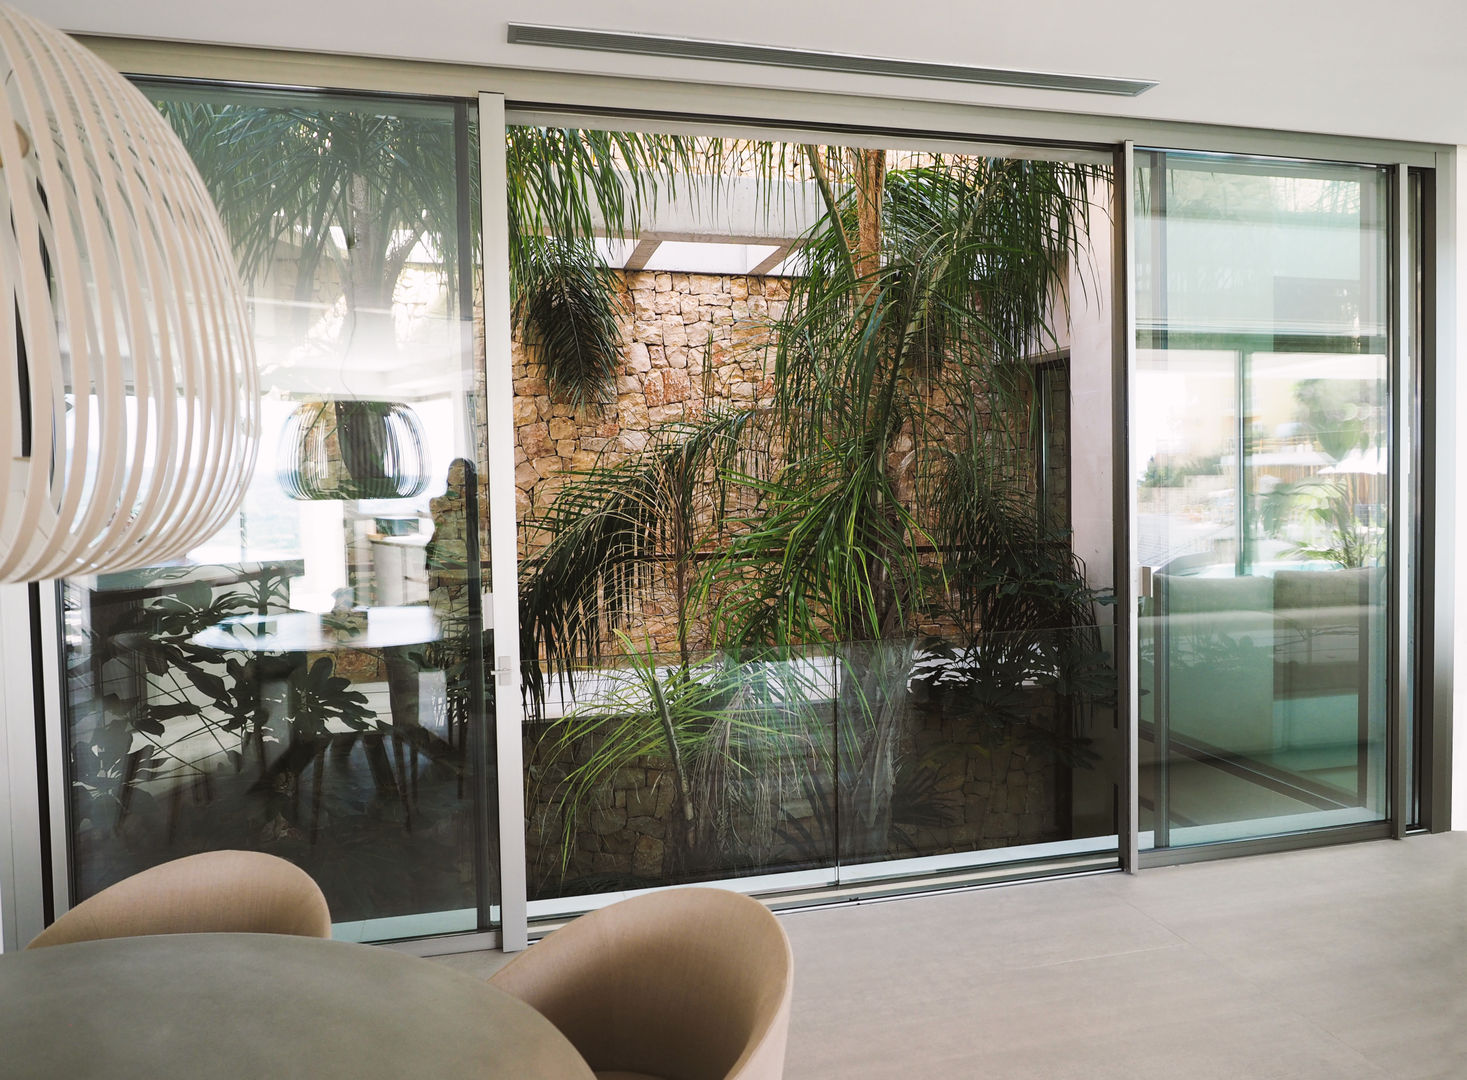 Patio interior vivienda Fernando Ferrer Arquitectos Jardines de invierno de estilo tropical patio, tropical, vegetal